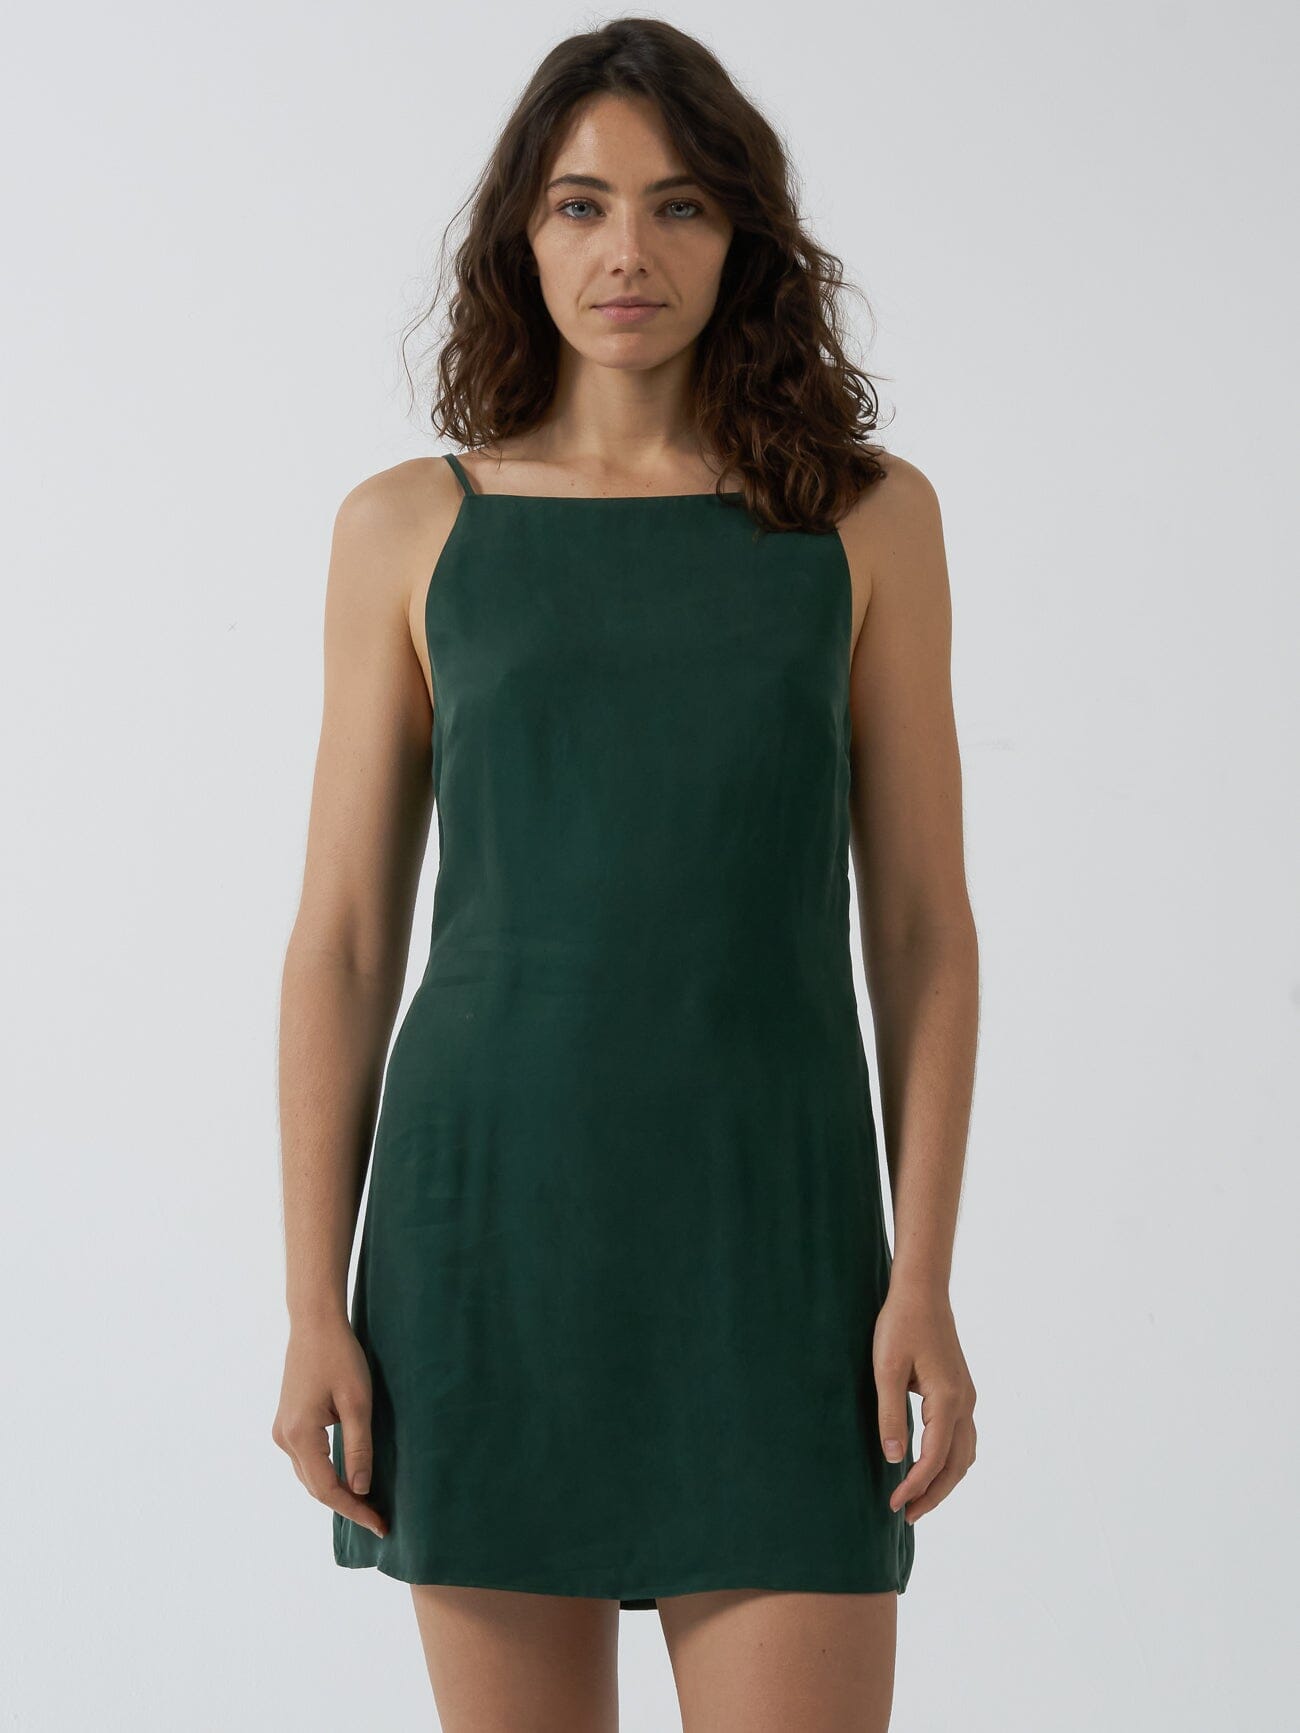 Manhatten Mini Dress - Deep Emerald